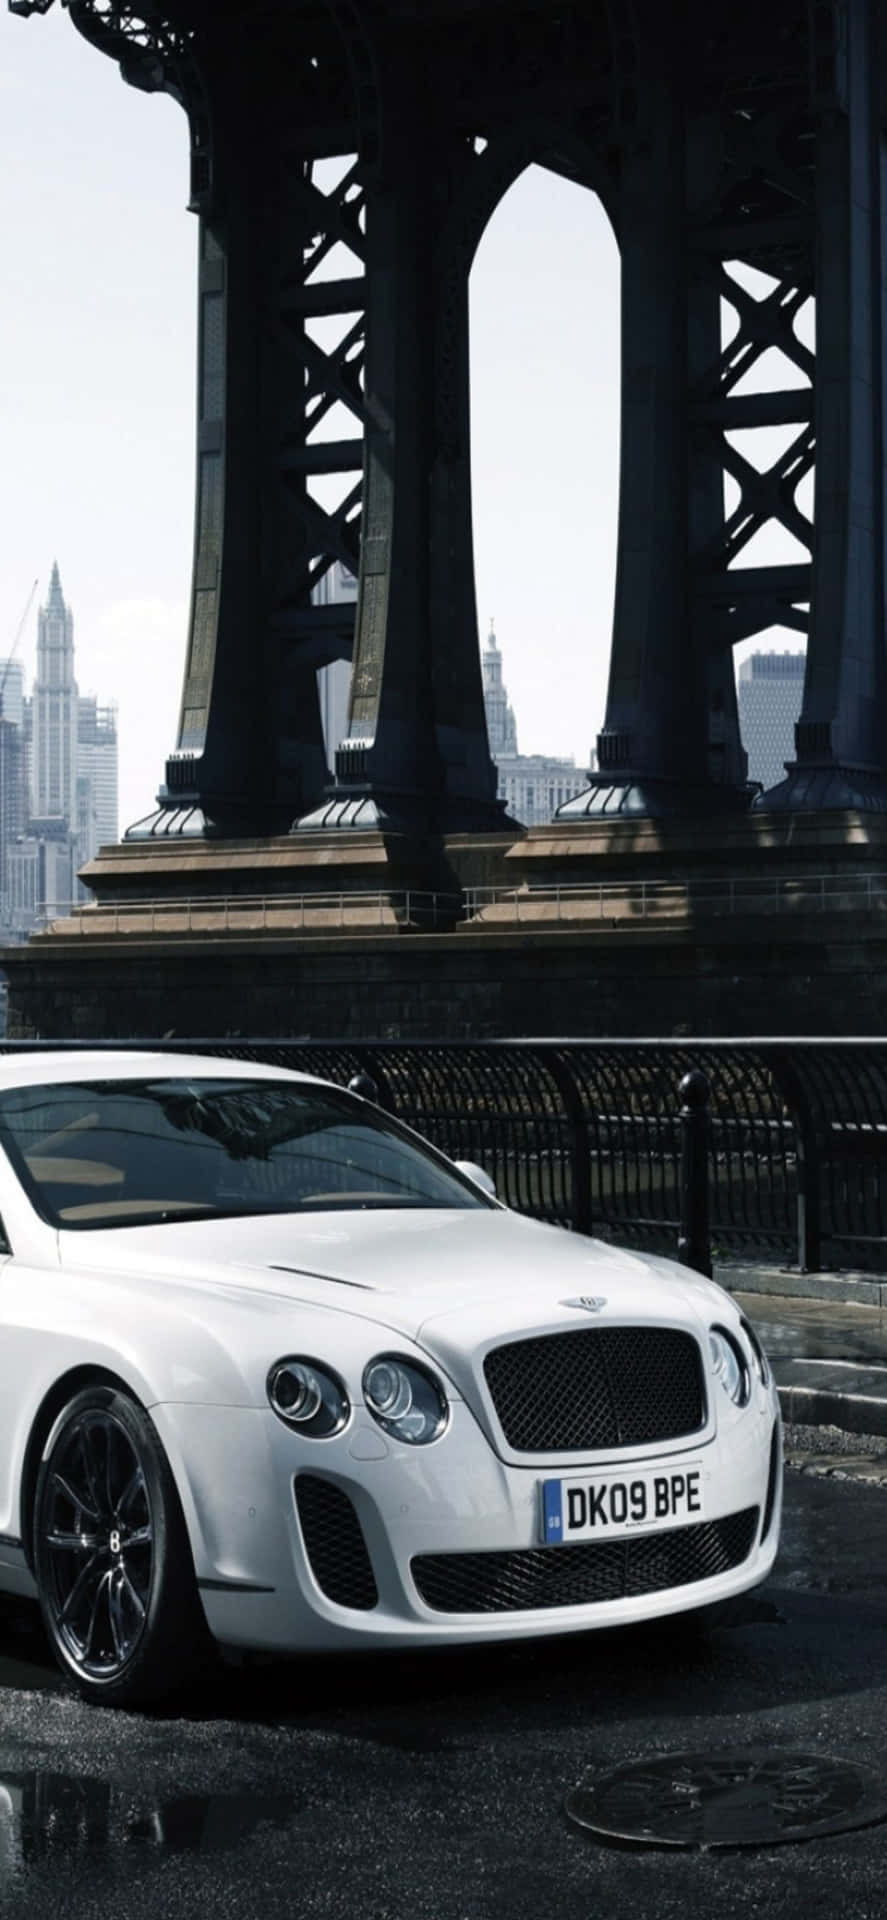 Luxus møder teknologi i dette foto af en Bentley og en Iphone Xs Max.